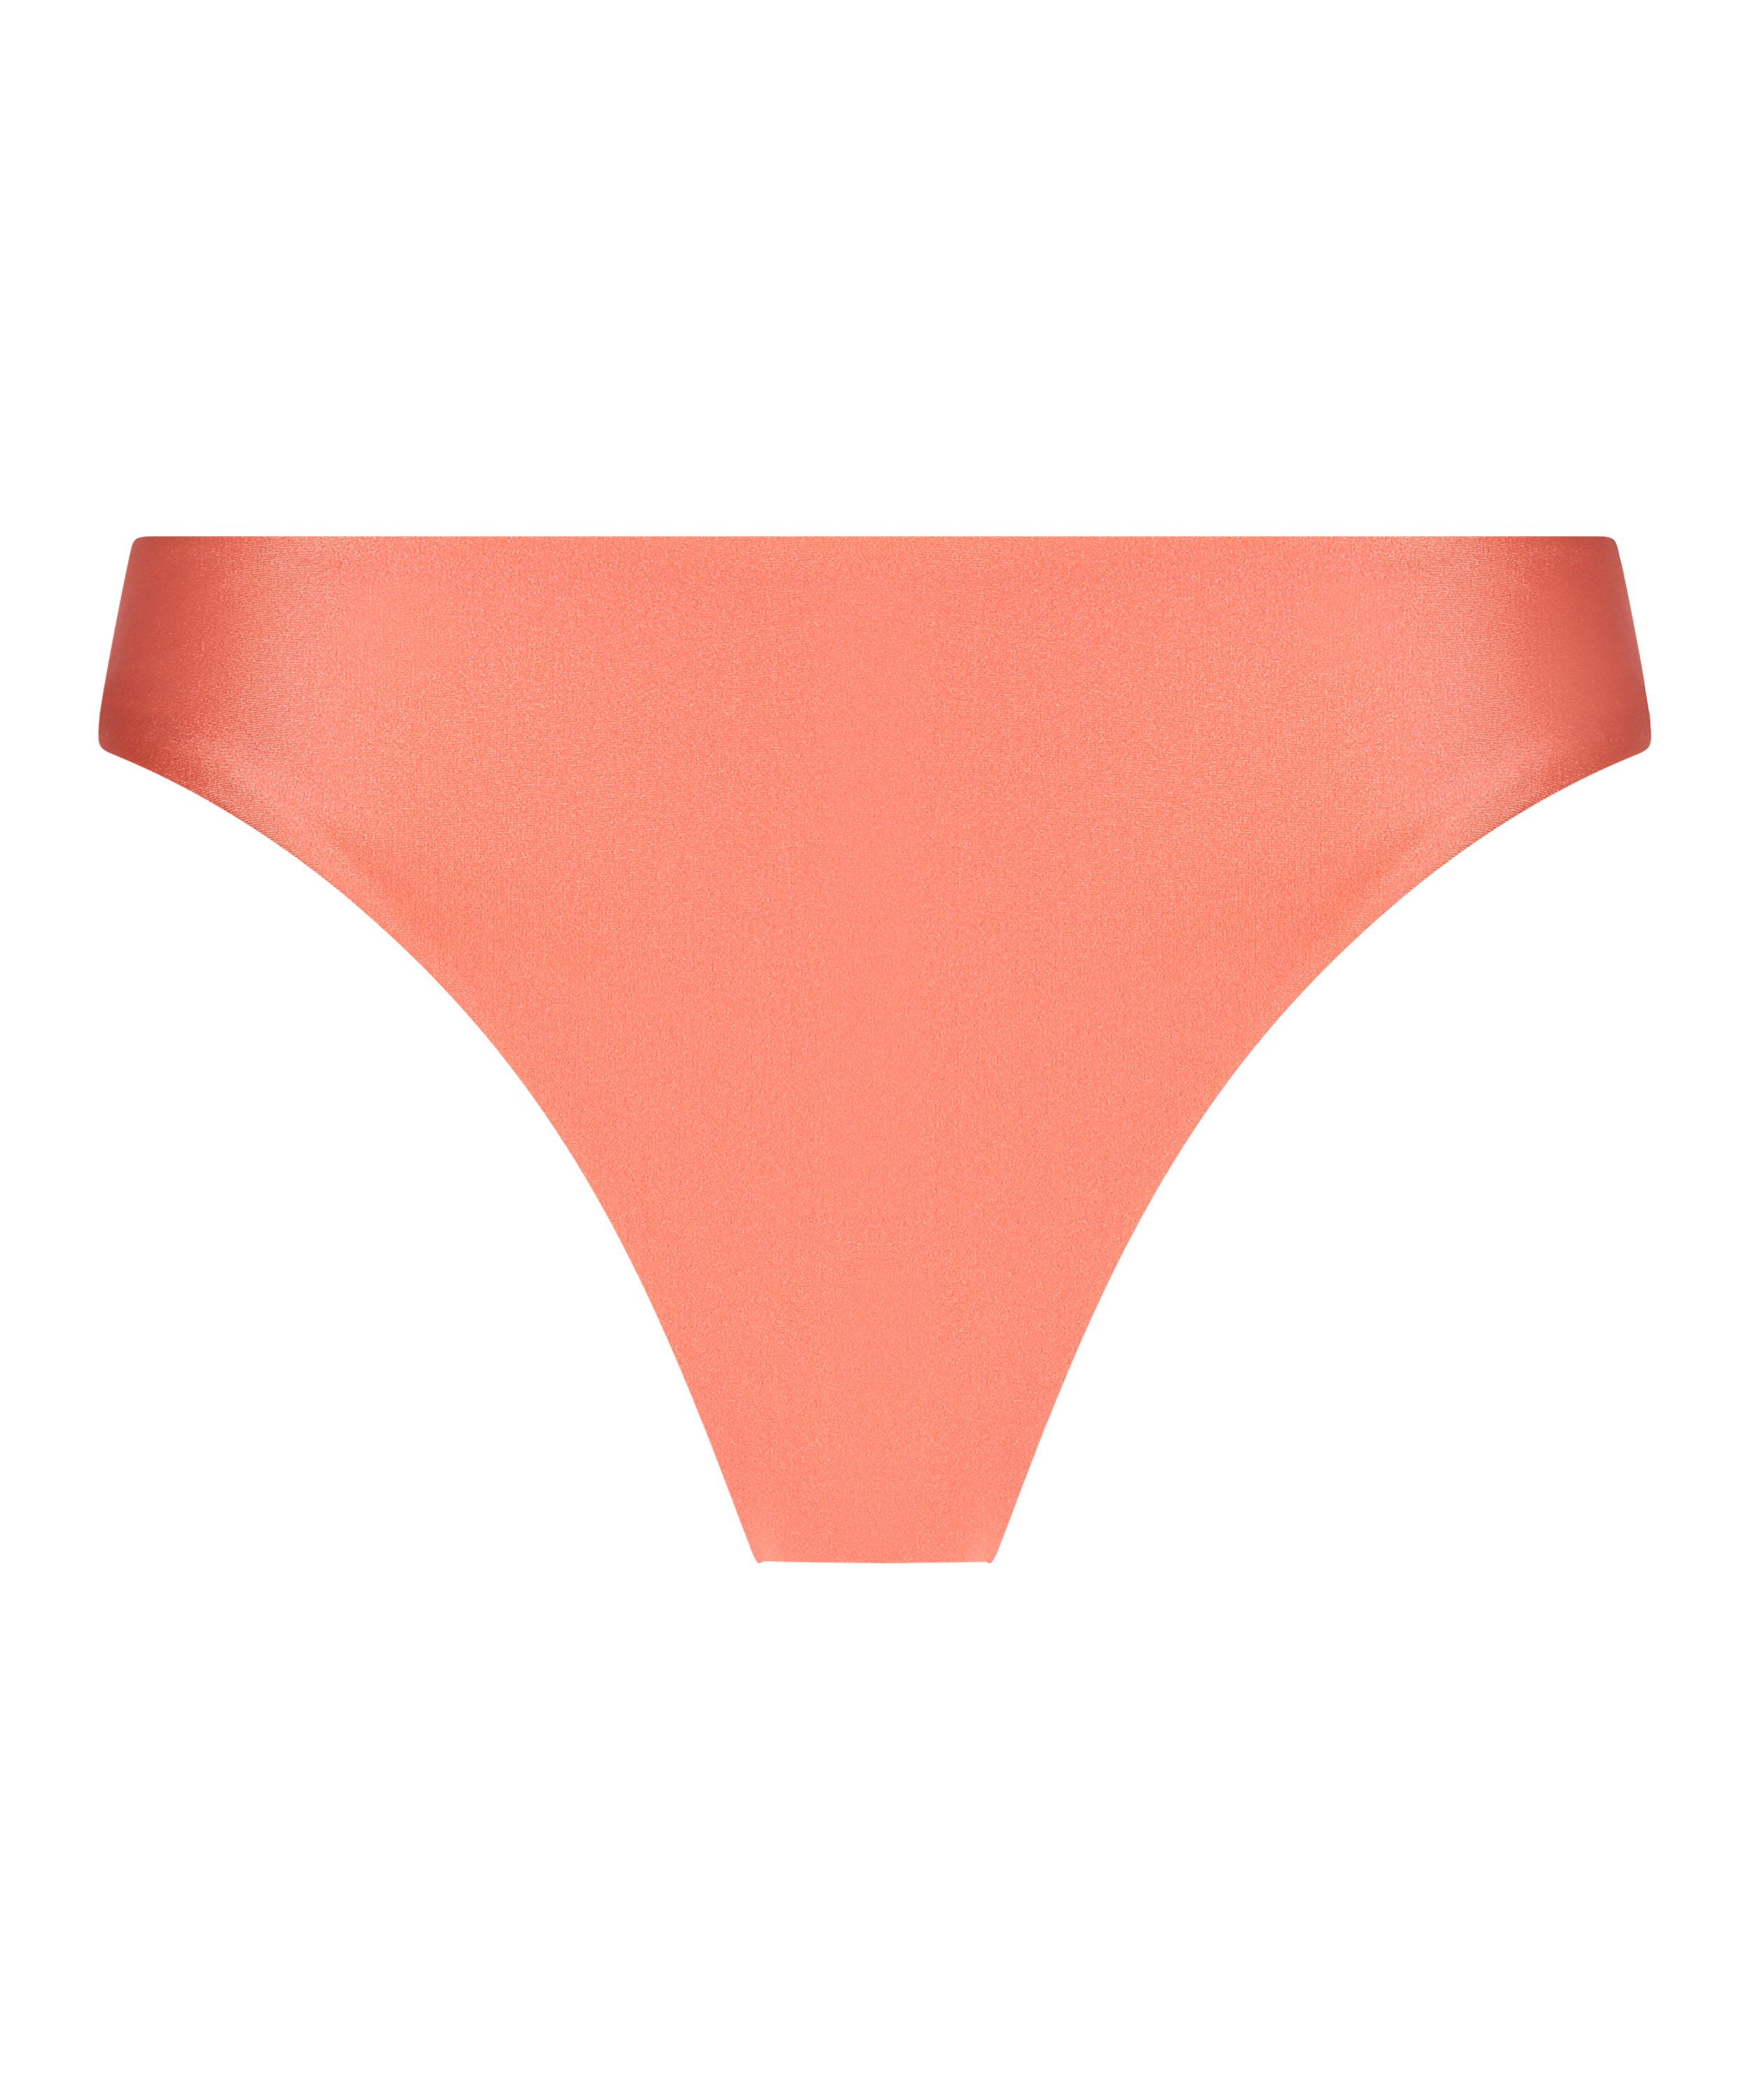 Braguita de bikini Sunrise, Naranja, main